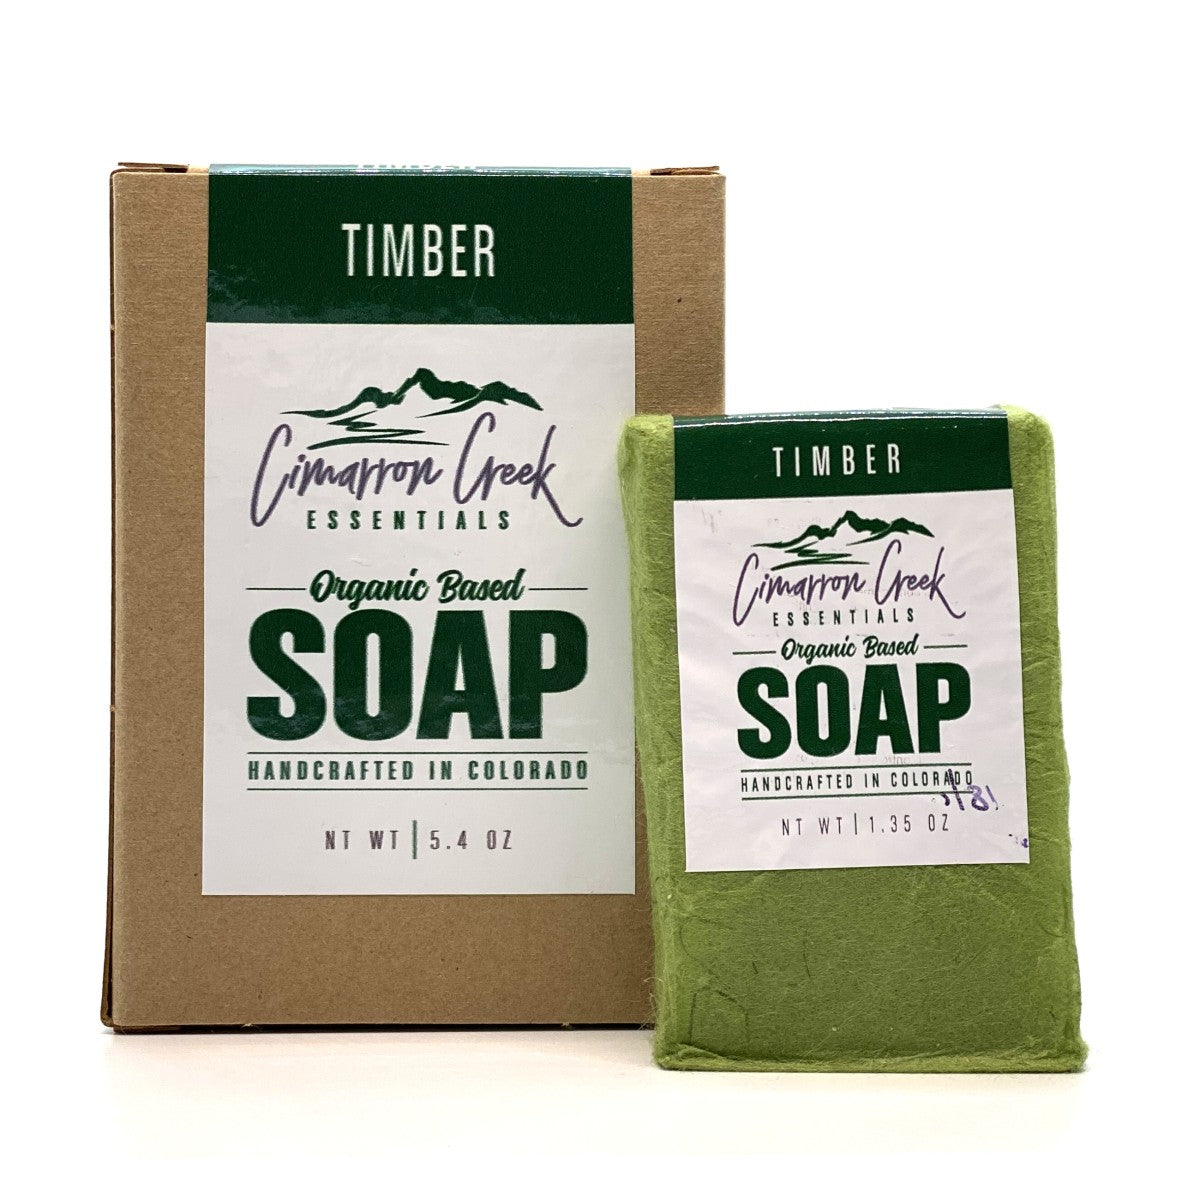 Timber Organic Bar Soap 5.4oz